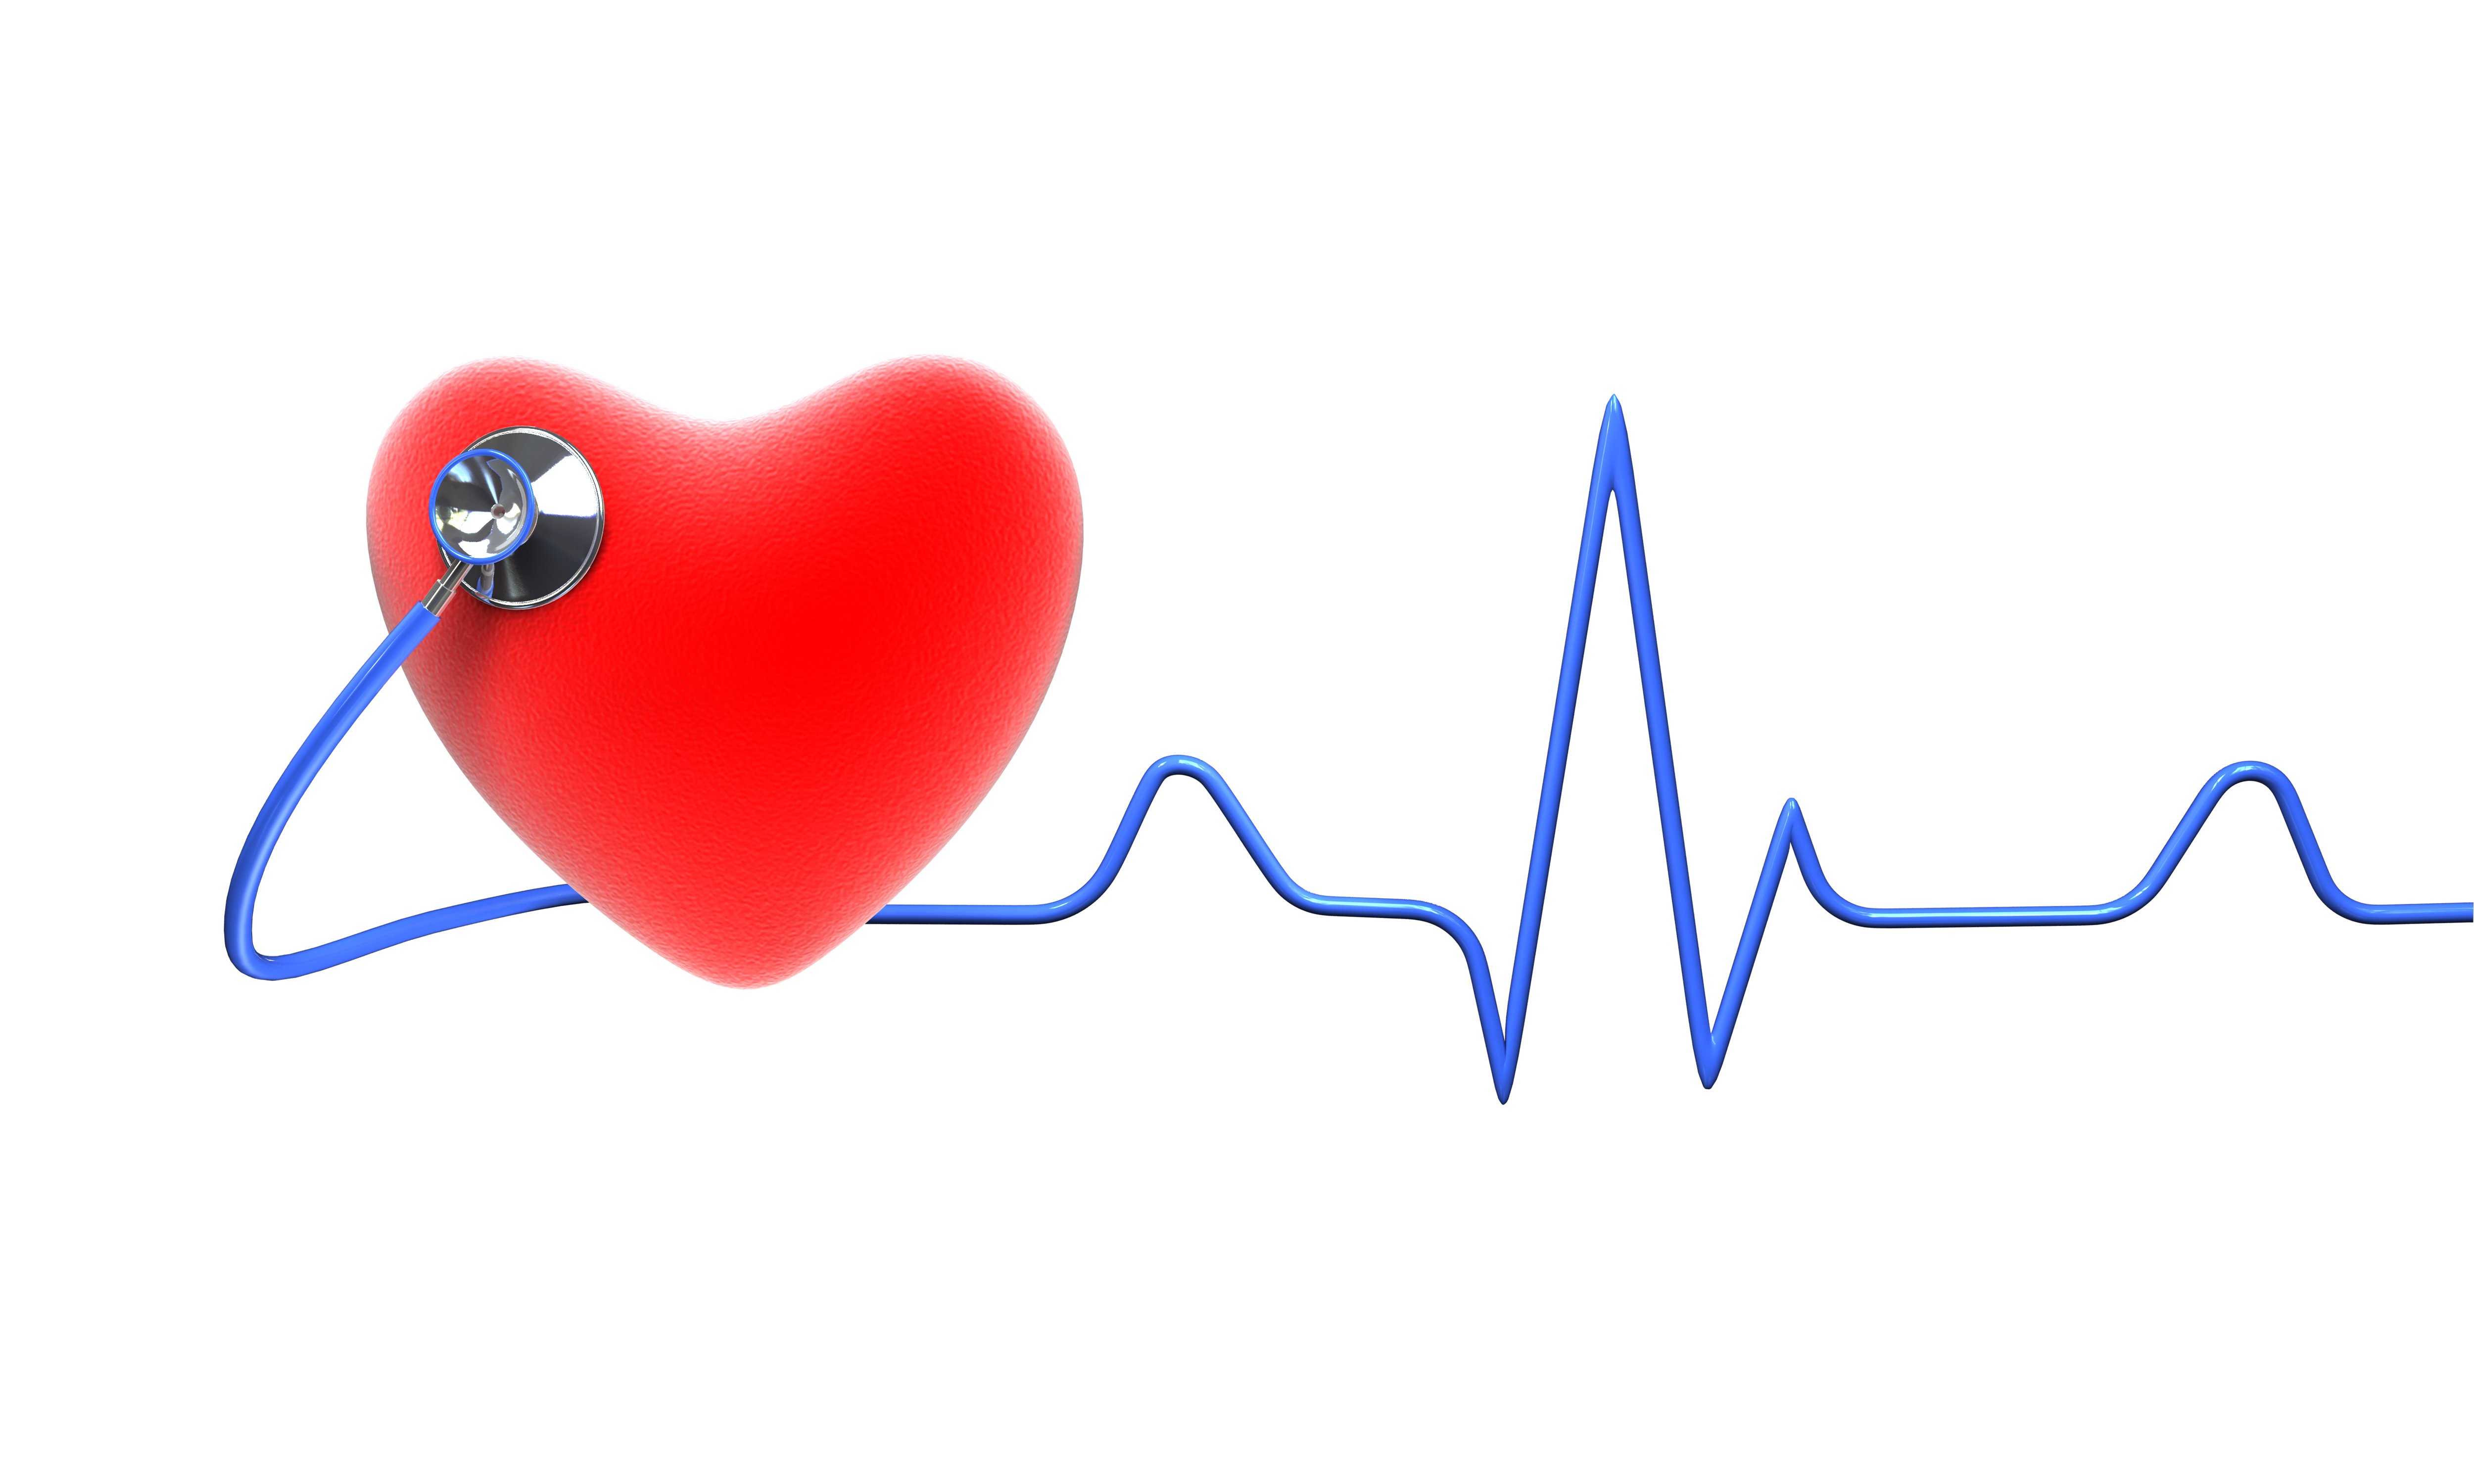 Радионуклидная вентрикулография (РВГ) сердца по первому прохождению — методика, возможности